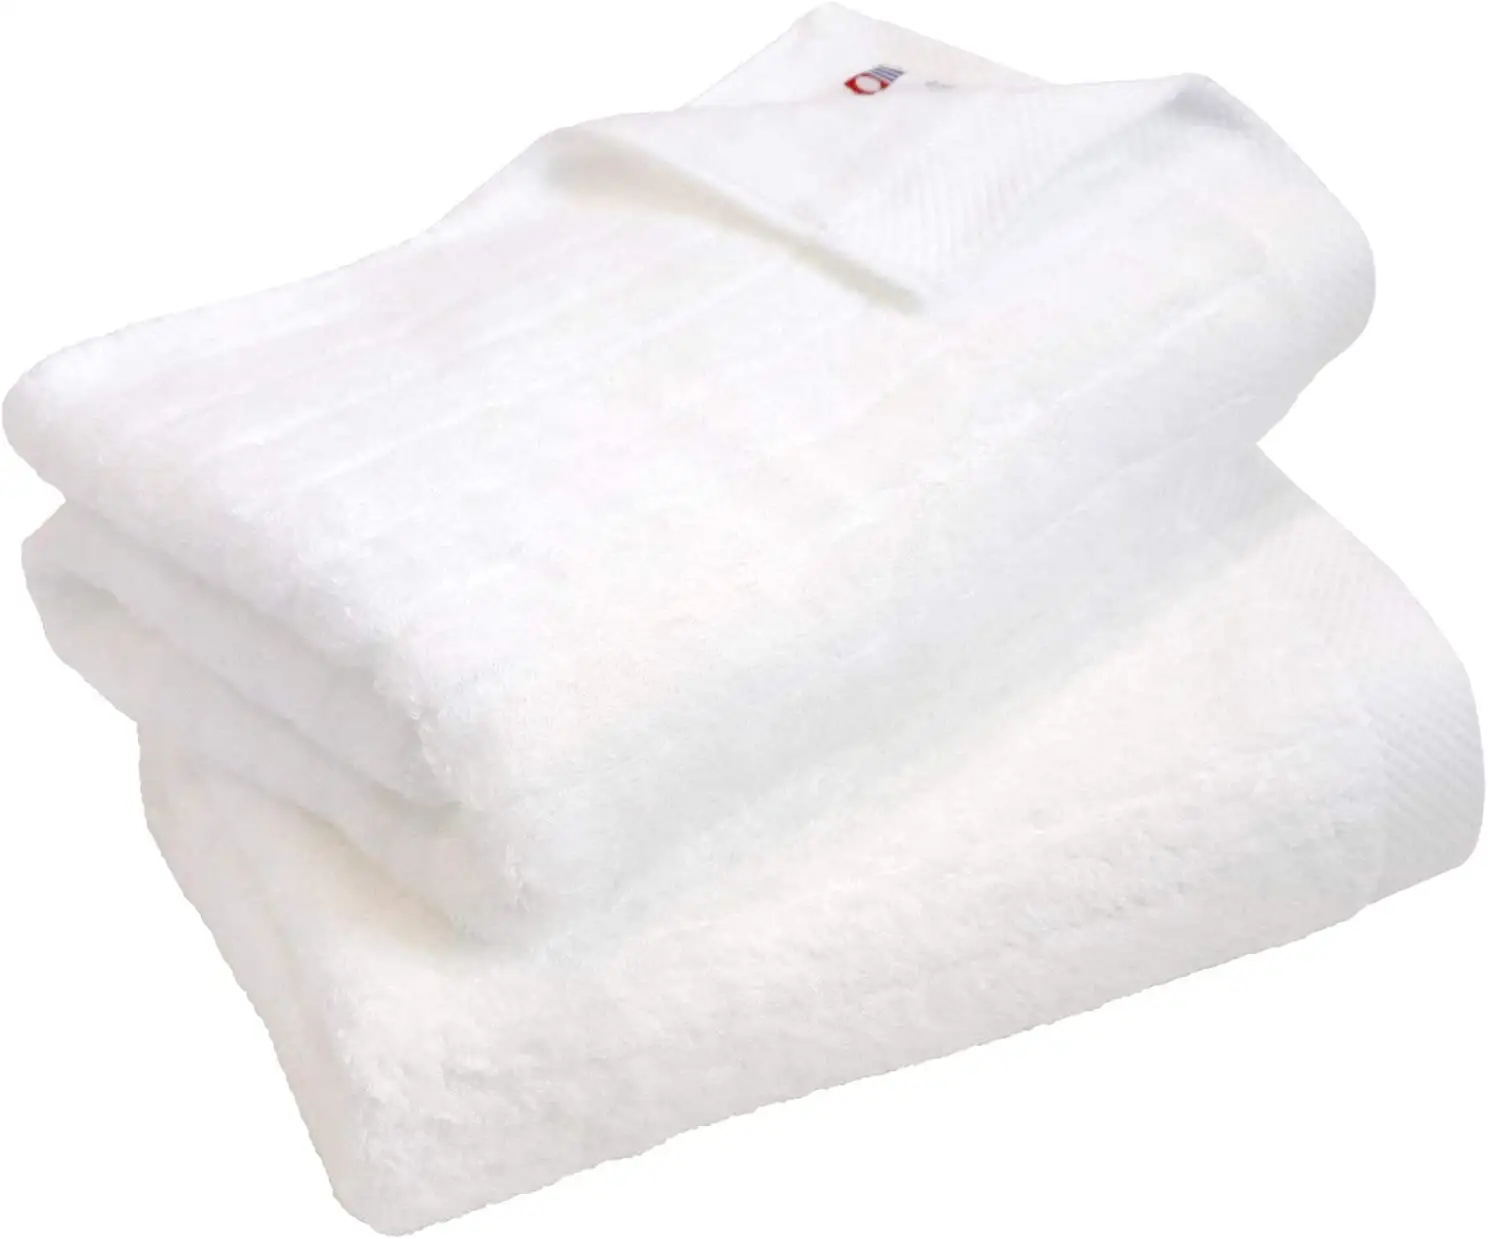 [Prodotti all'ingrosso] HIORIE Imabari asciugamano cotone 100% asciugamano da bagno Fuwarib 60*120cm 450GSM morbido filato ritorto Rib design bianco